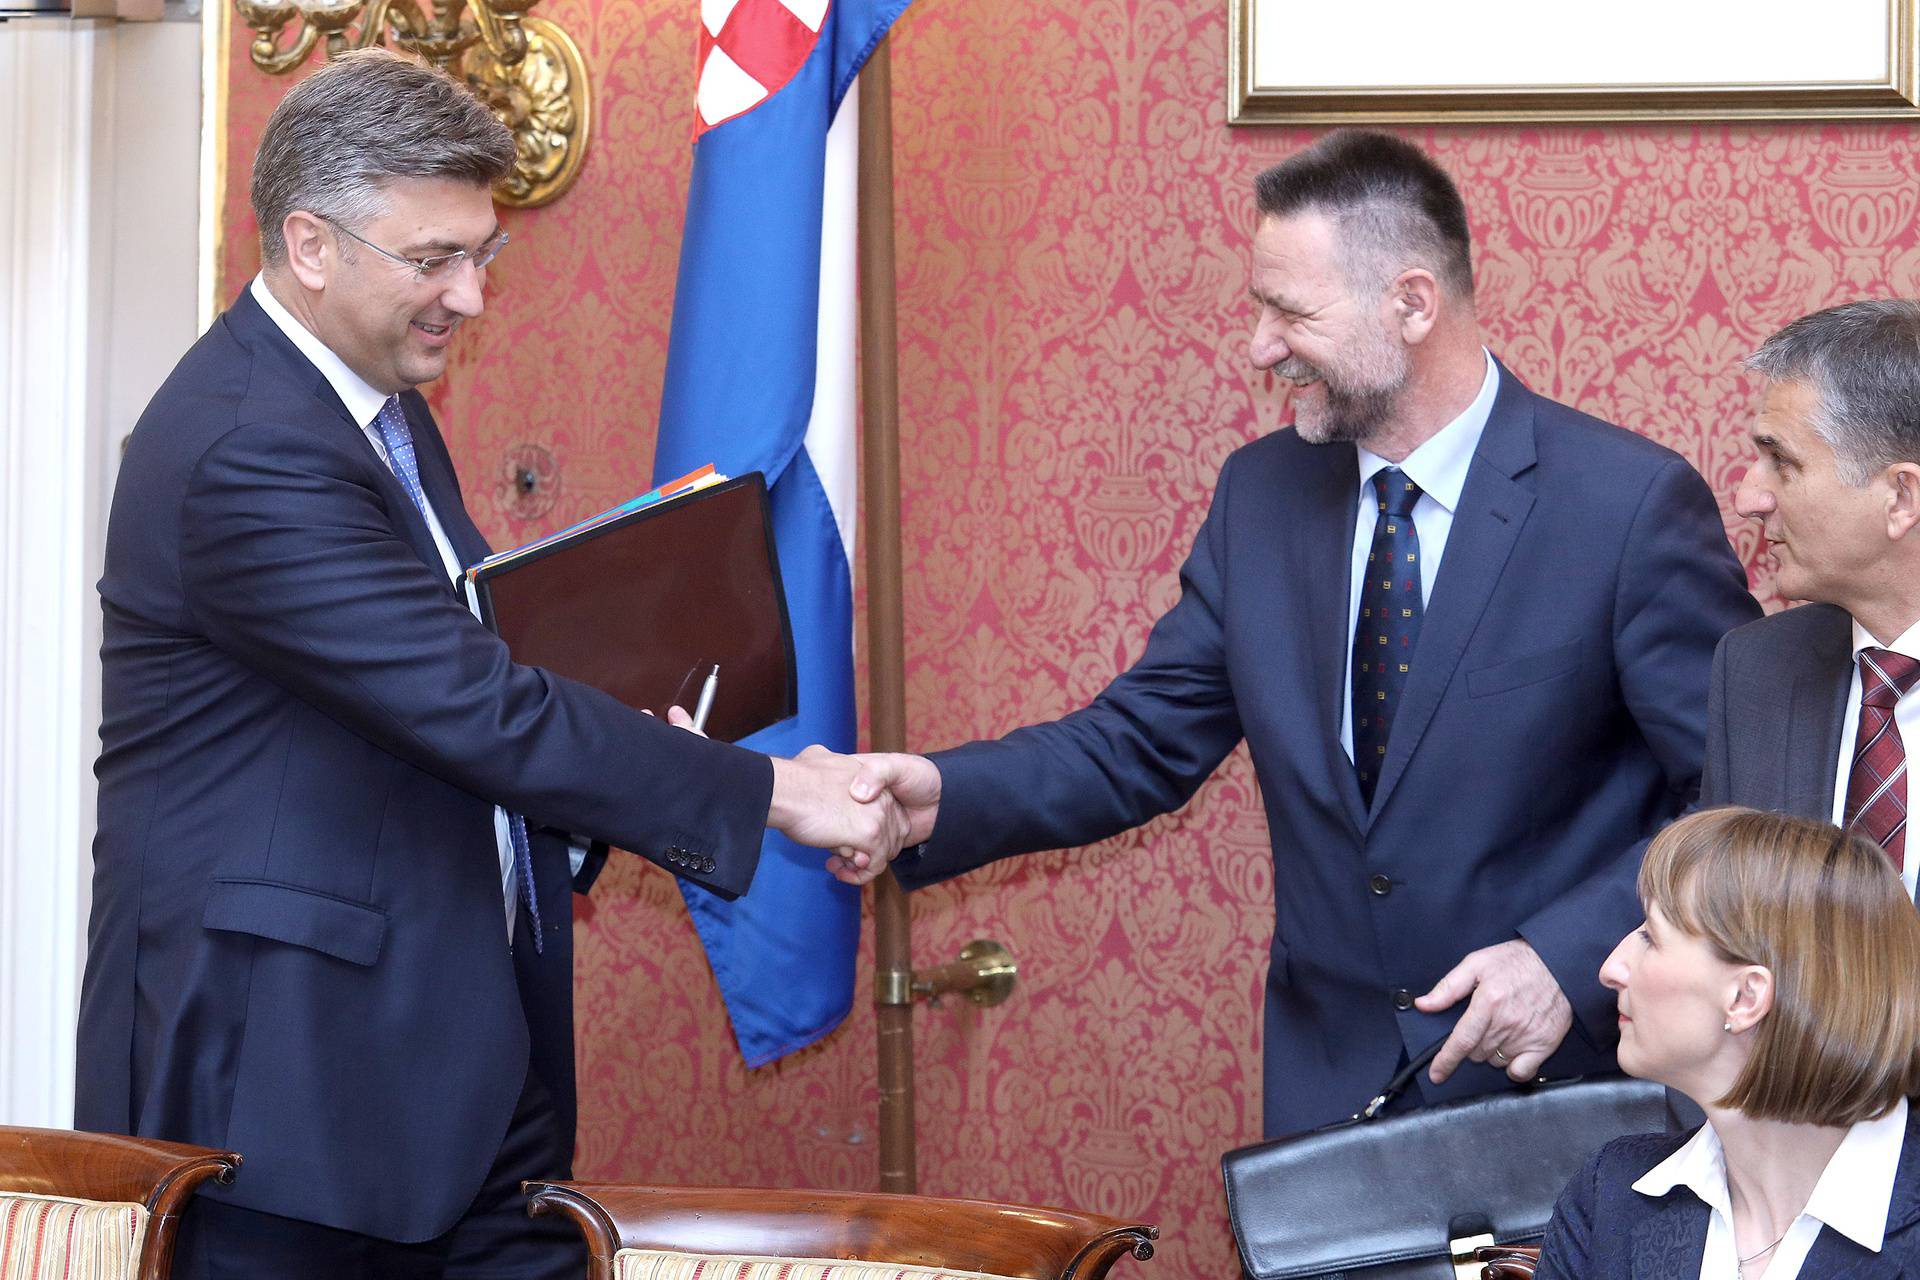 Hrvatski studiji 2020. završili u minusu 1,78 milijuna kuna, ali su donirali Paneuropsku uniju